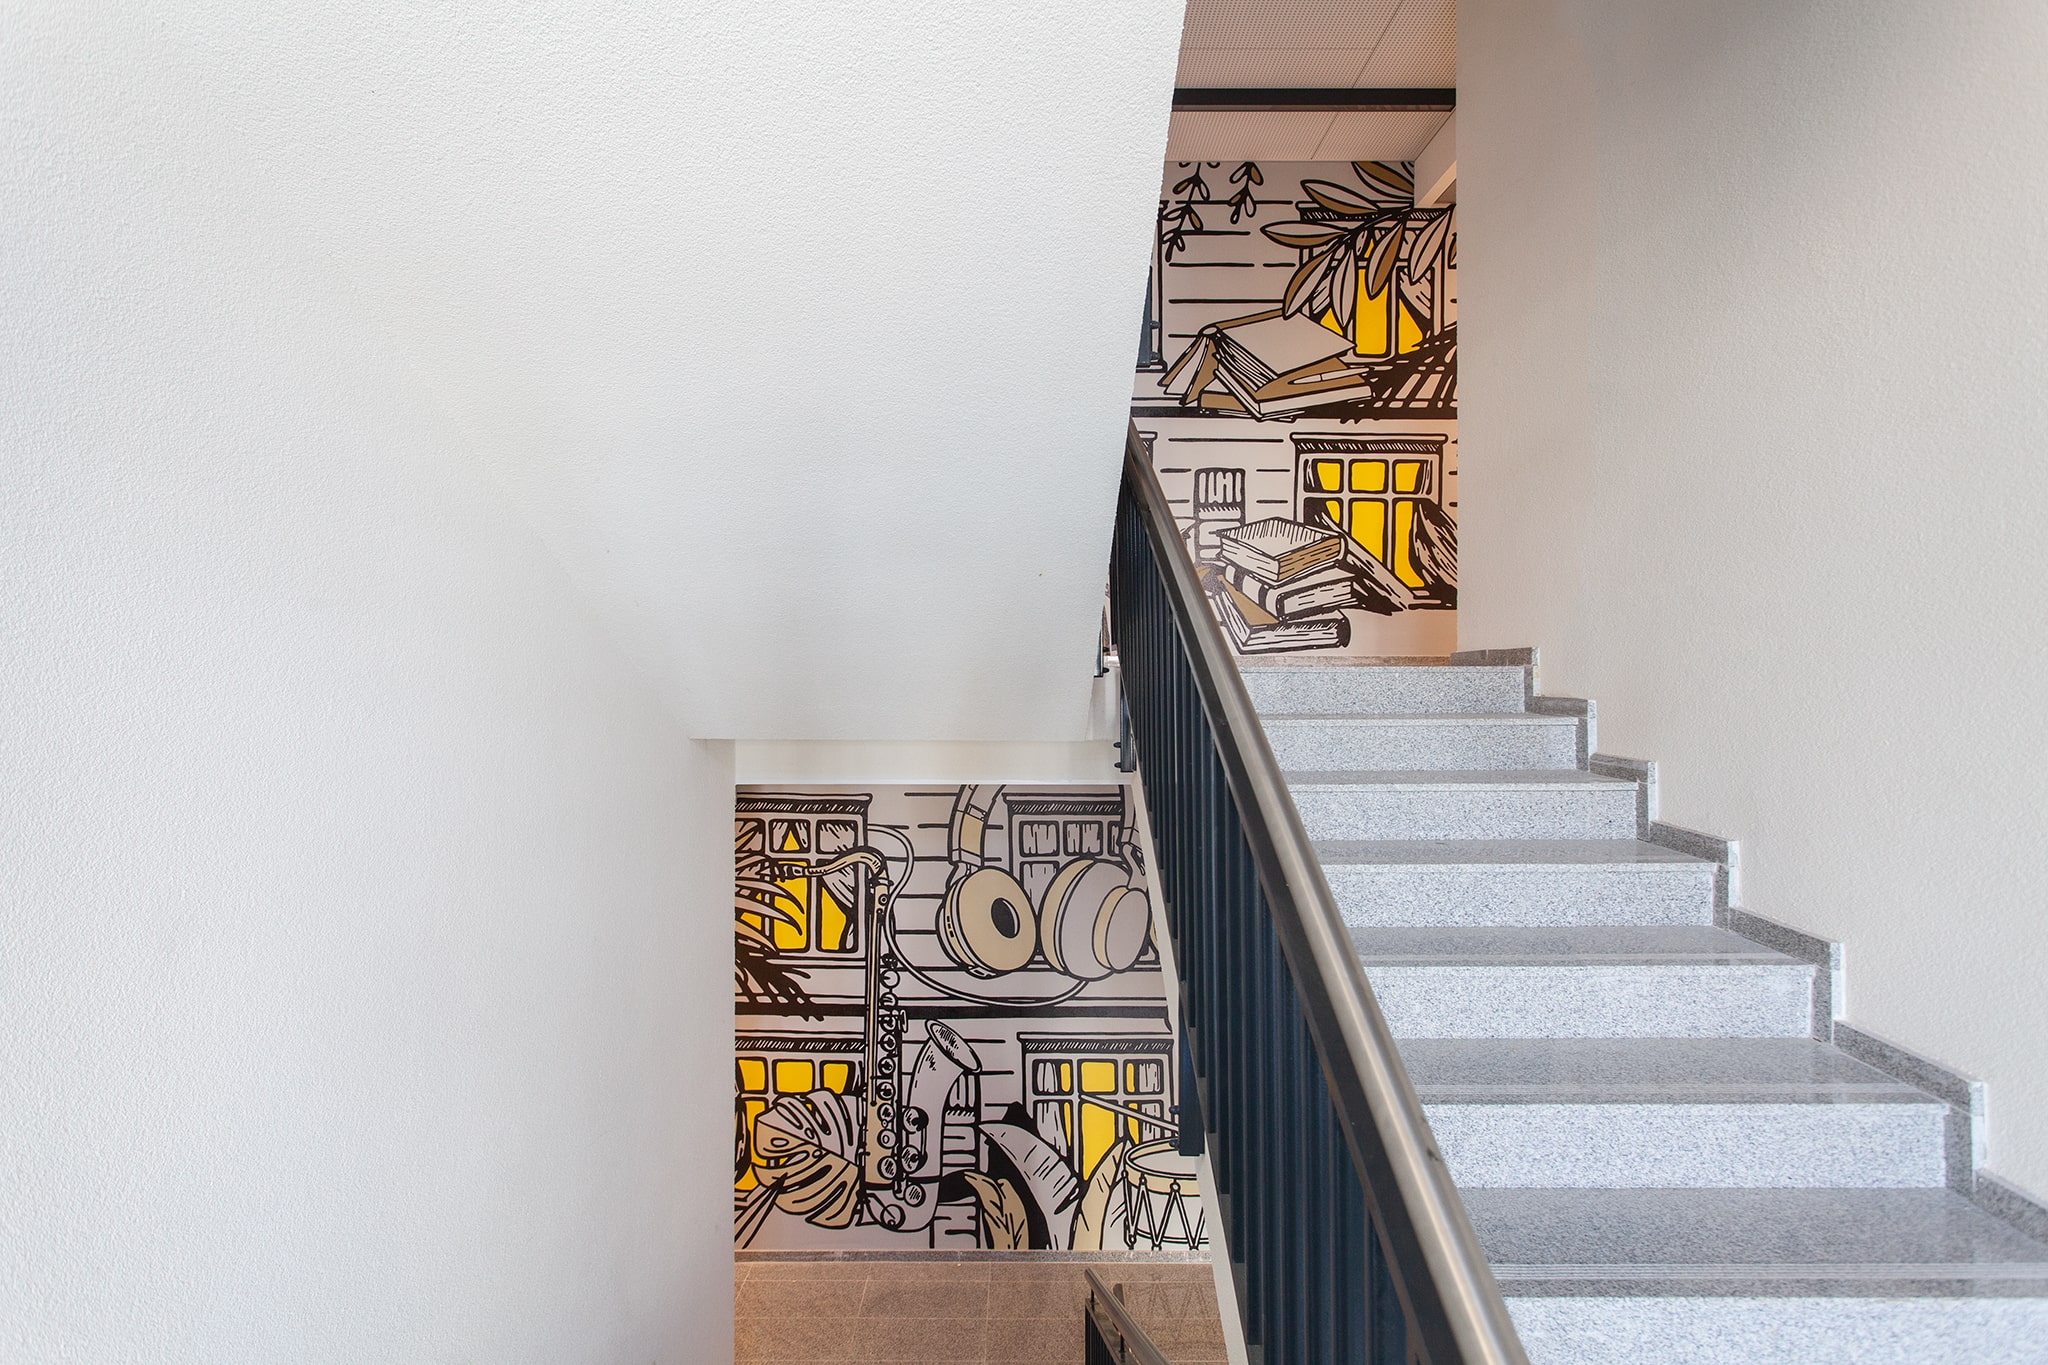 Į žaismingas urban-retro stiliaus ir grafikos darbais dekoruotas laiptines patenkama kylant panoraminiu liftu arba granito plokščių laiptais